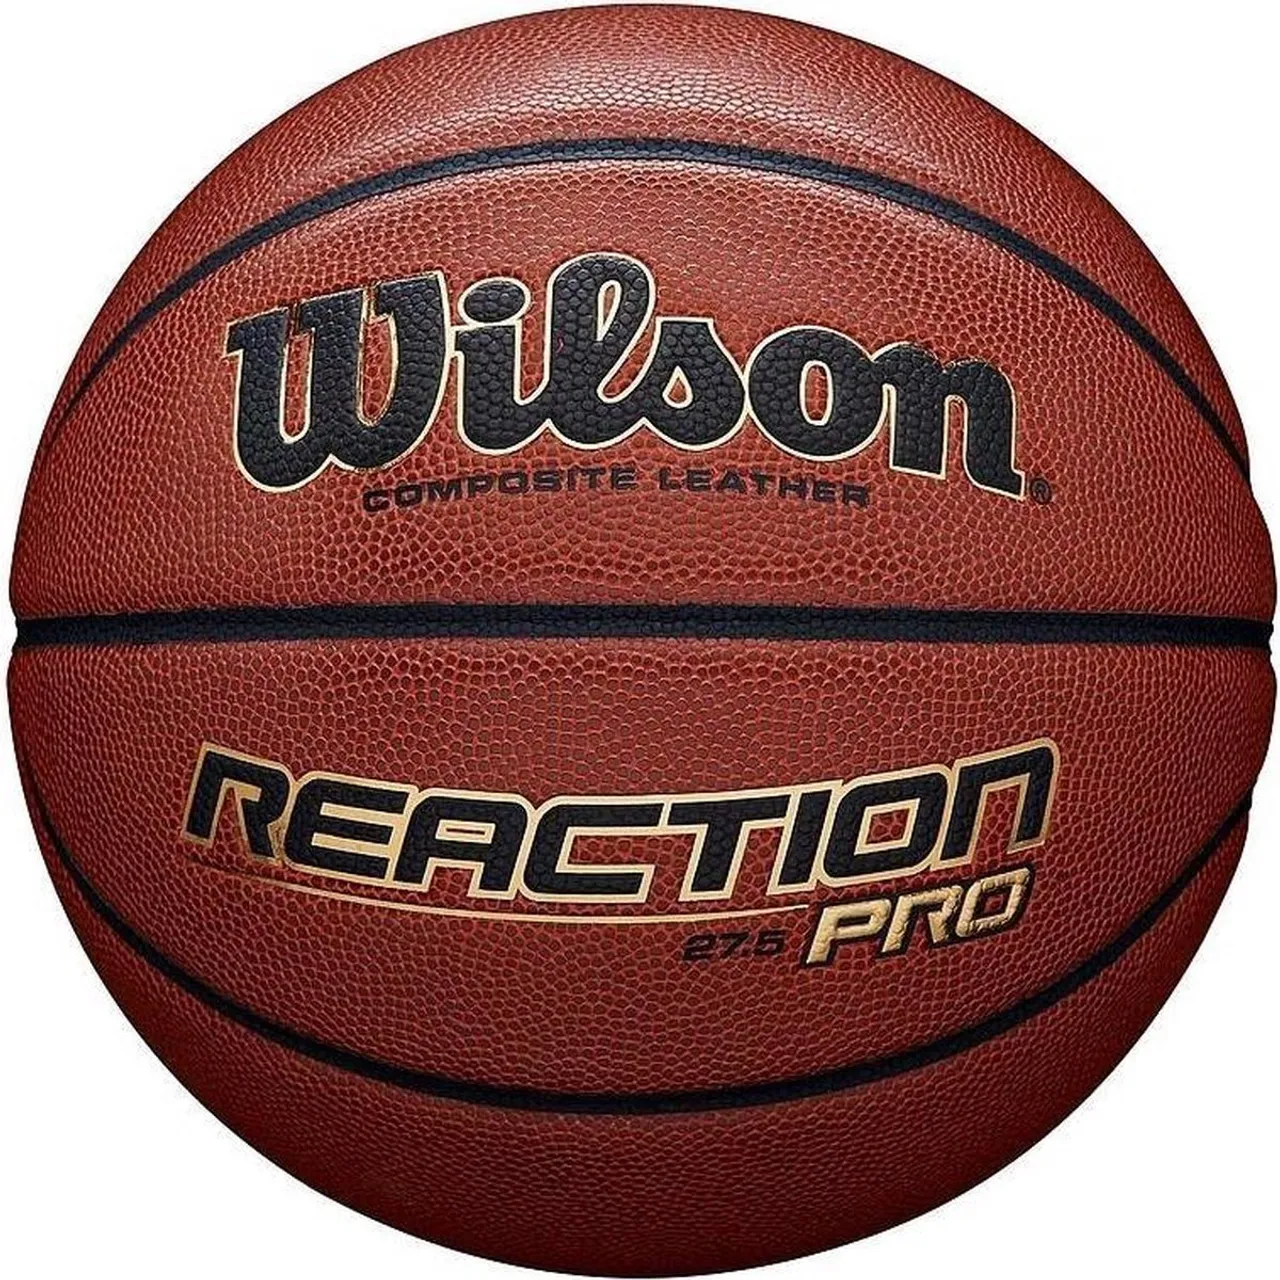 Wilson Reaction Pro - Basketbal - Oranje - maat 5